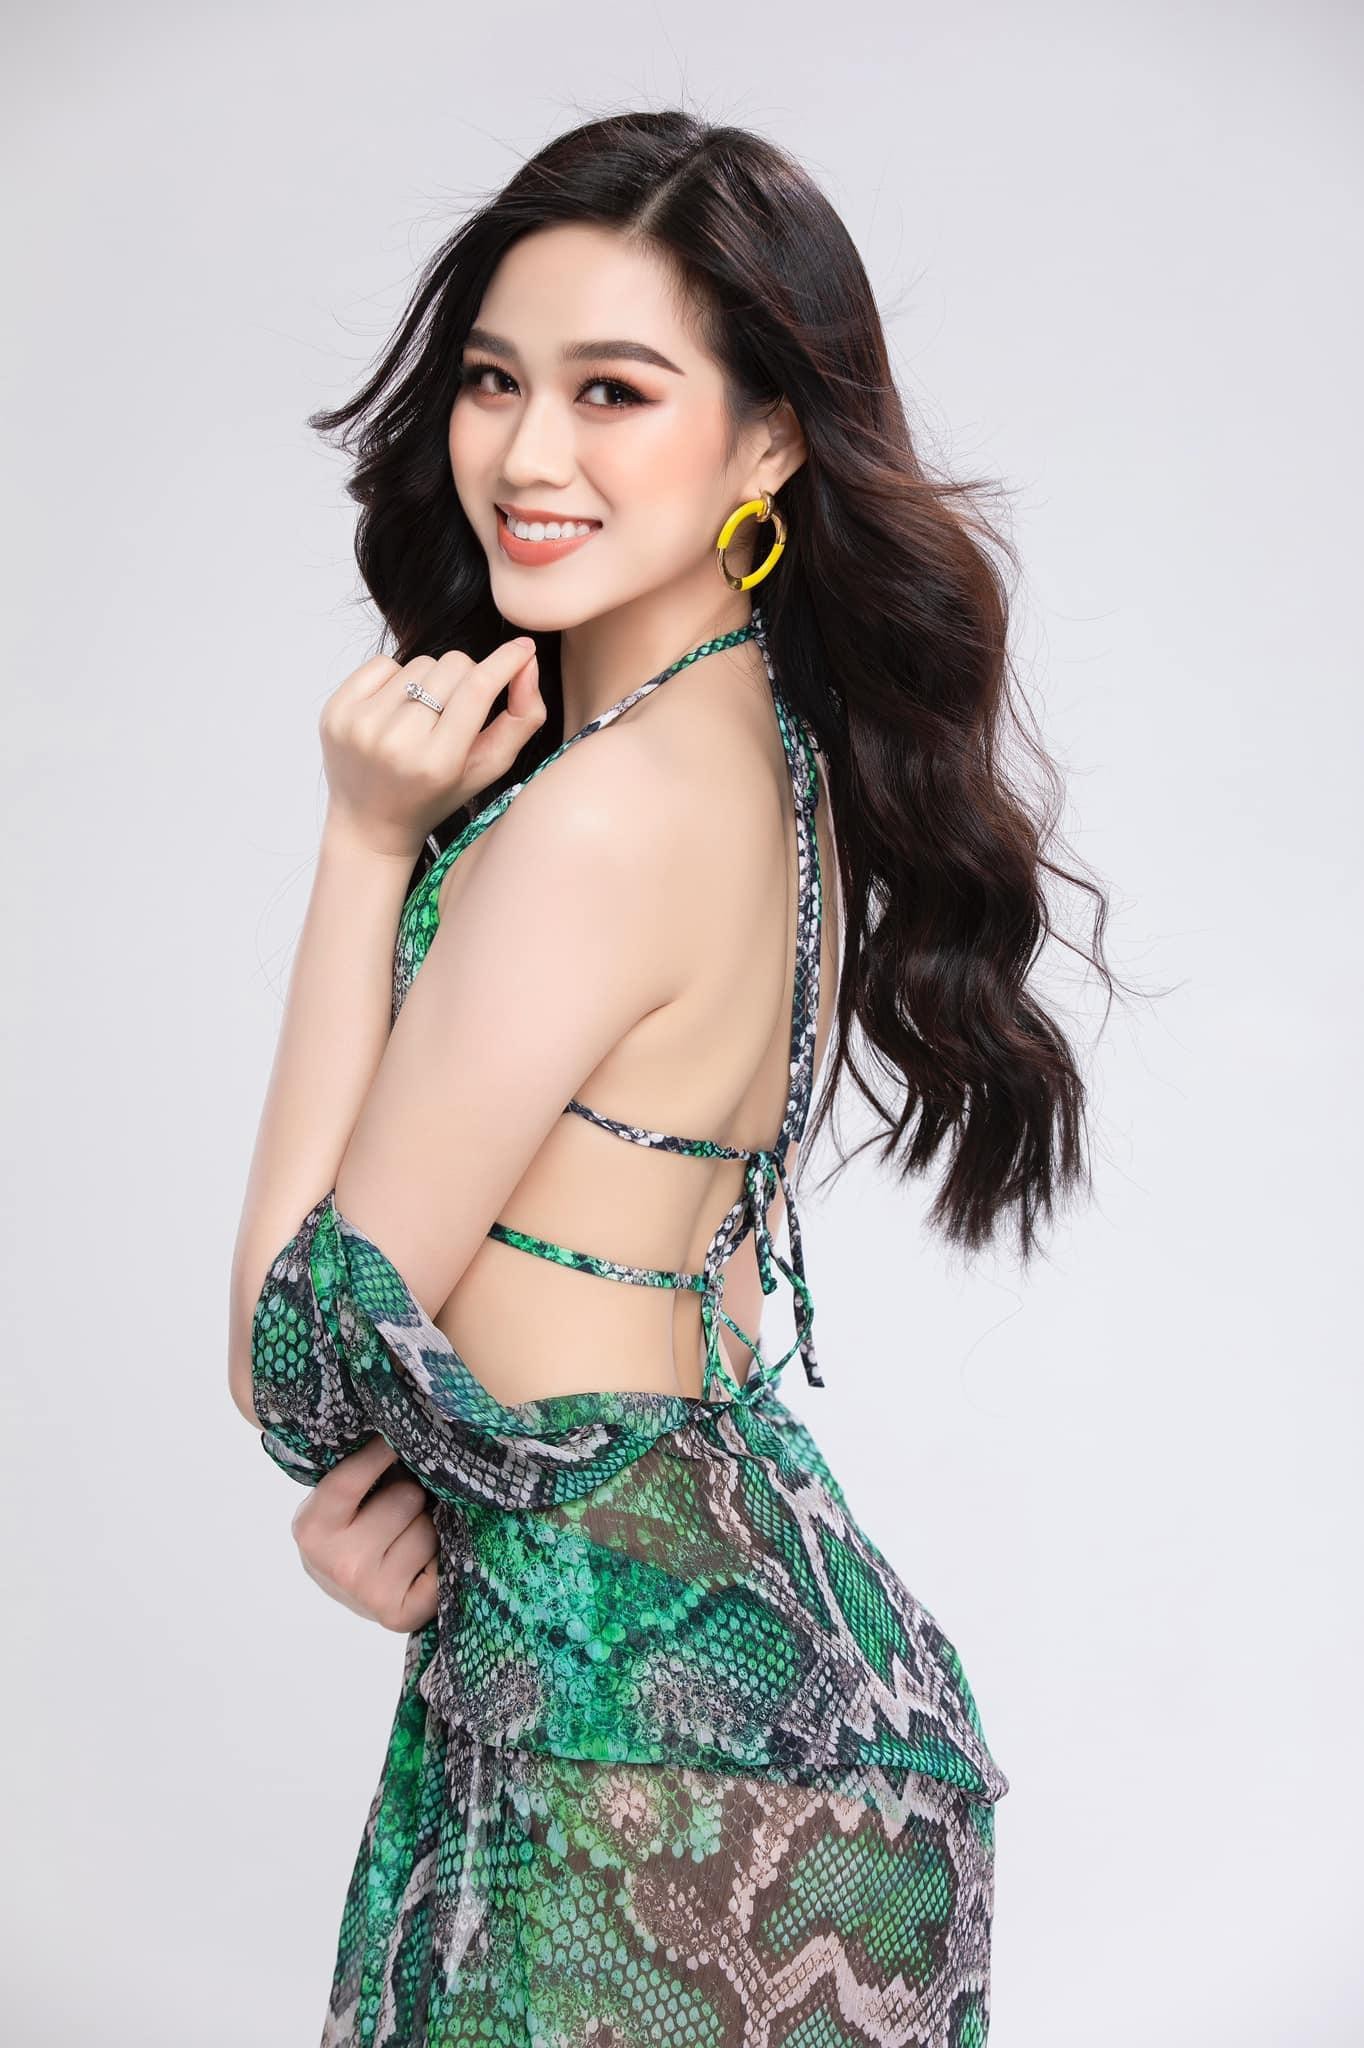 Hoa hậu Đỗ Thị Hà lần đầu tung ảnh bikini sau 6 tháng đăng quang